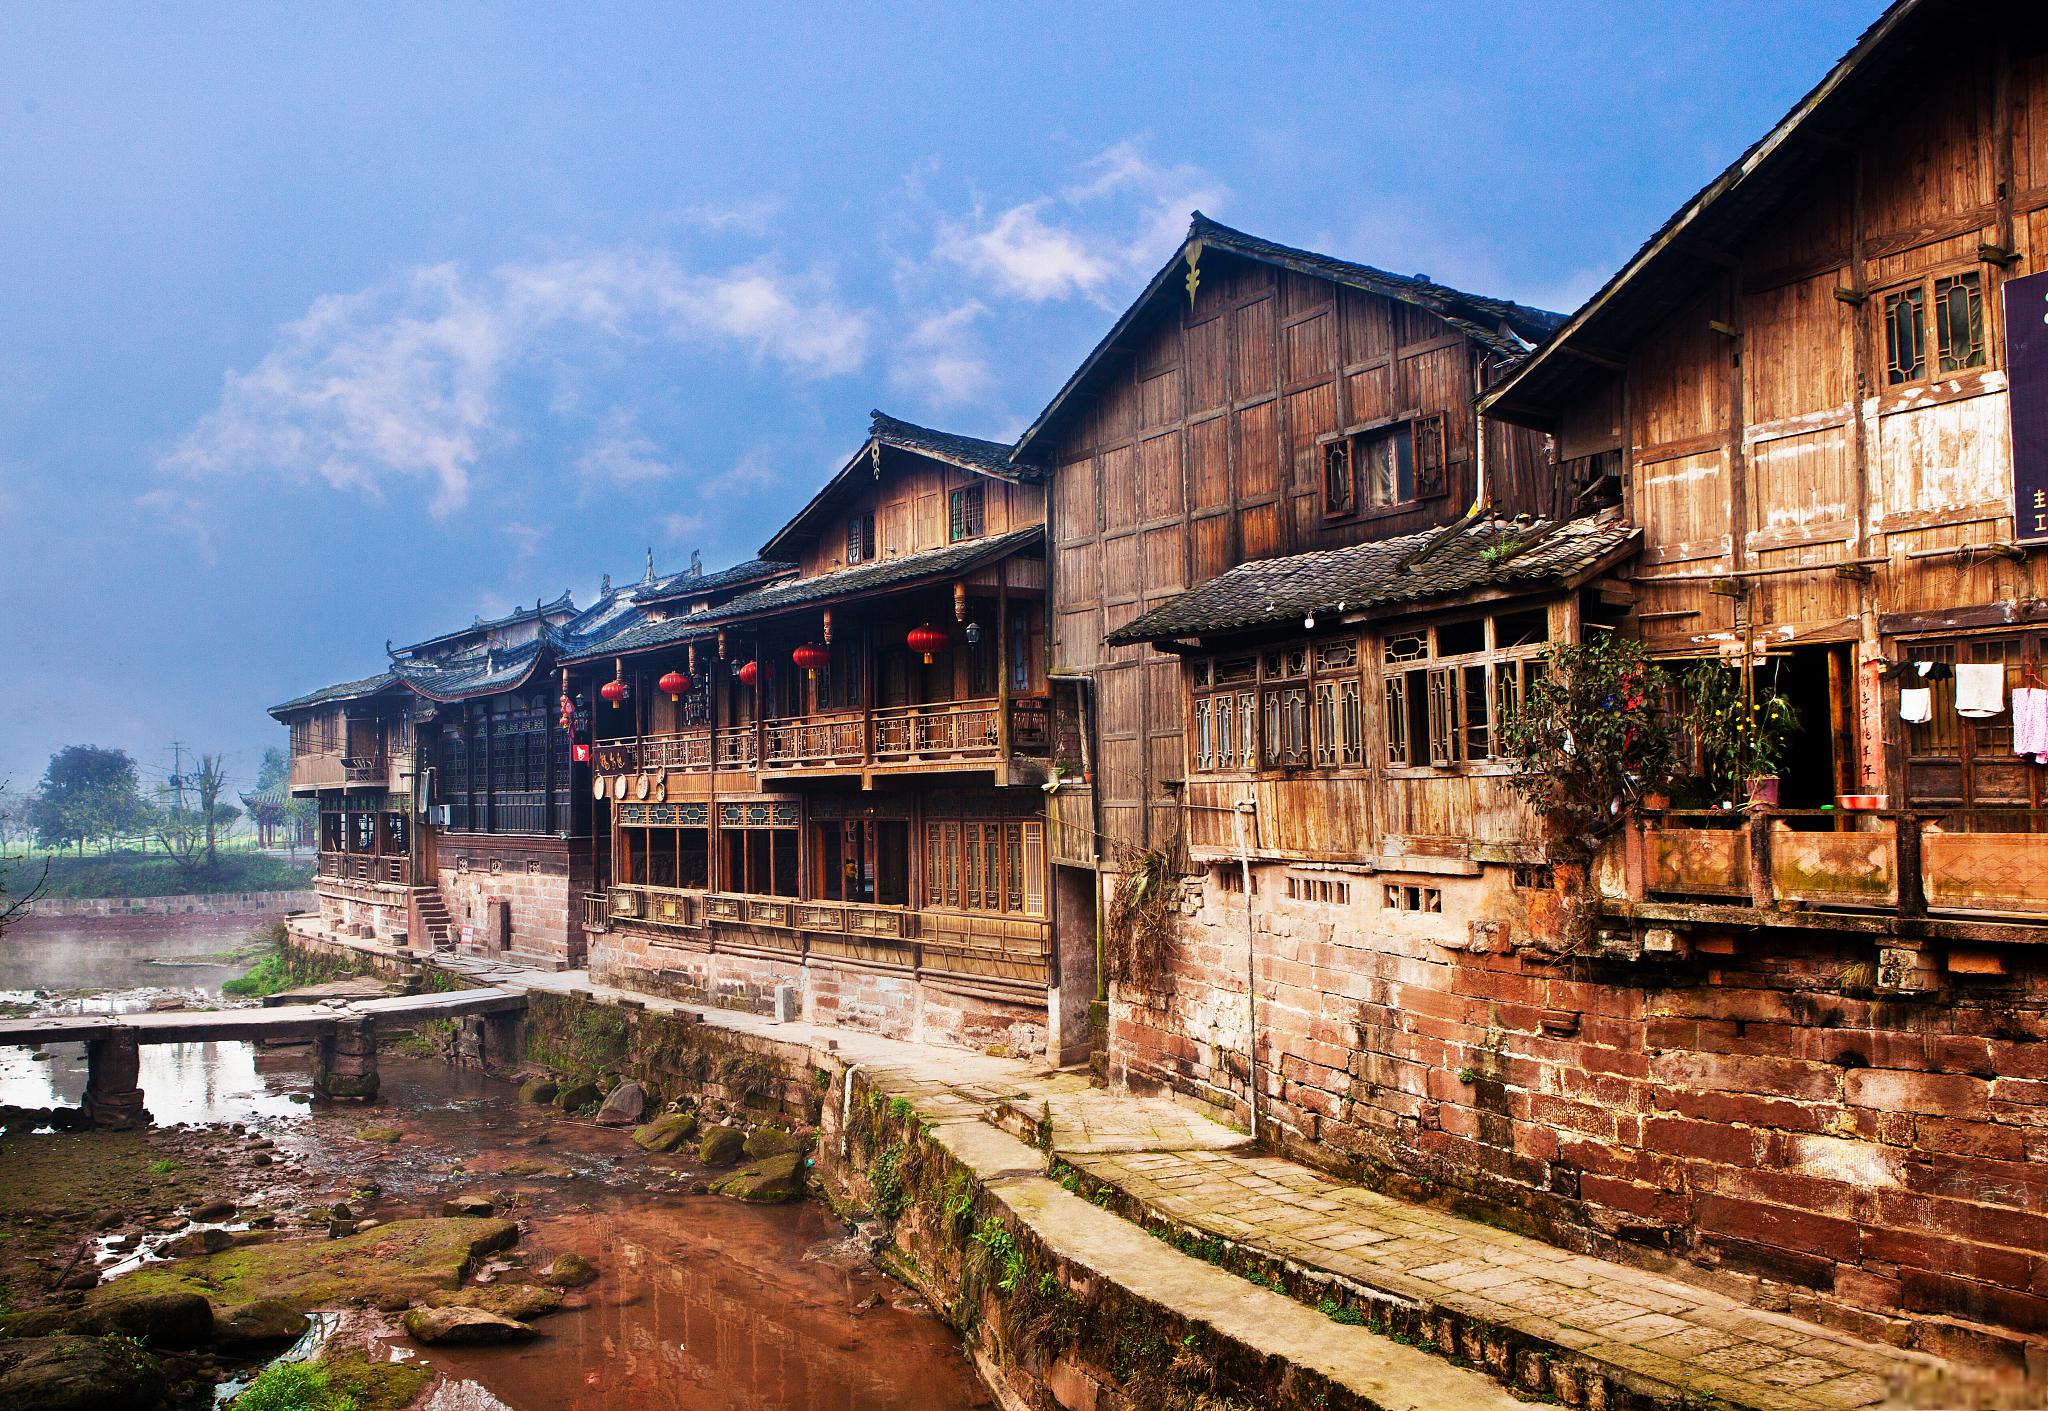 青木川古镇,一个充满历史韵味和文化底蕴的地方 青木川古镇,位于陕西